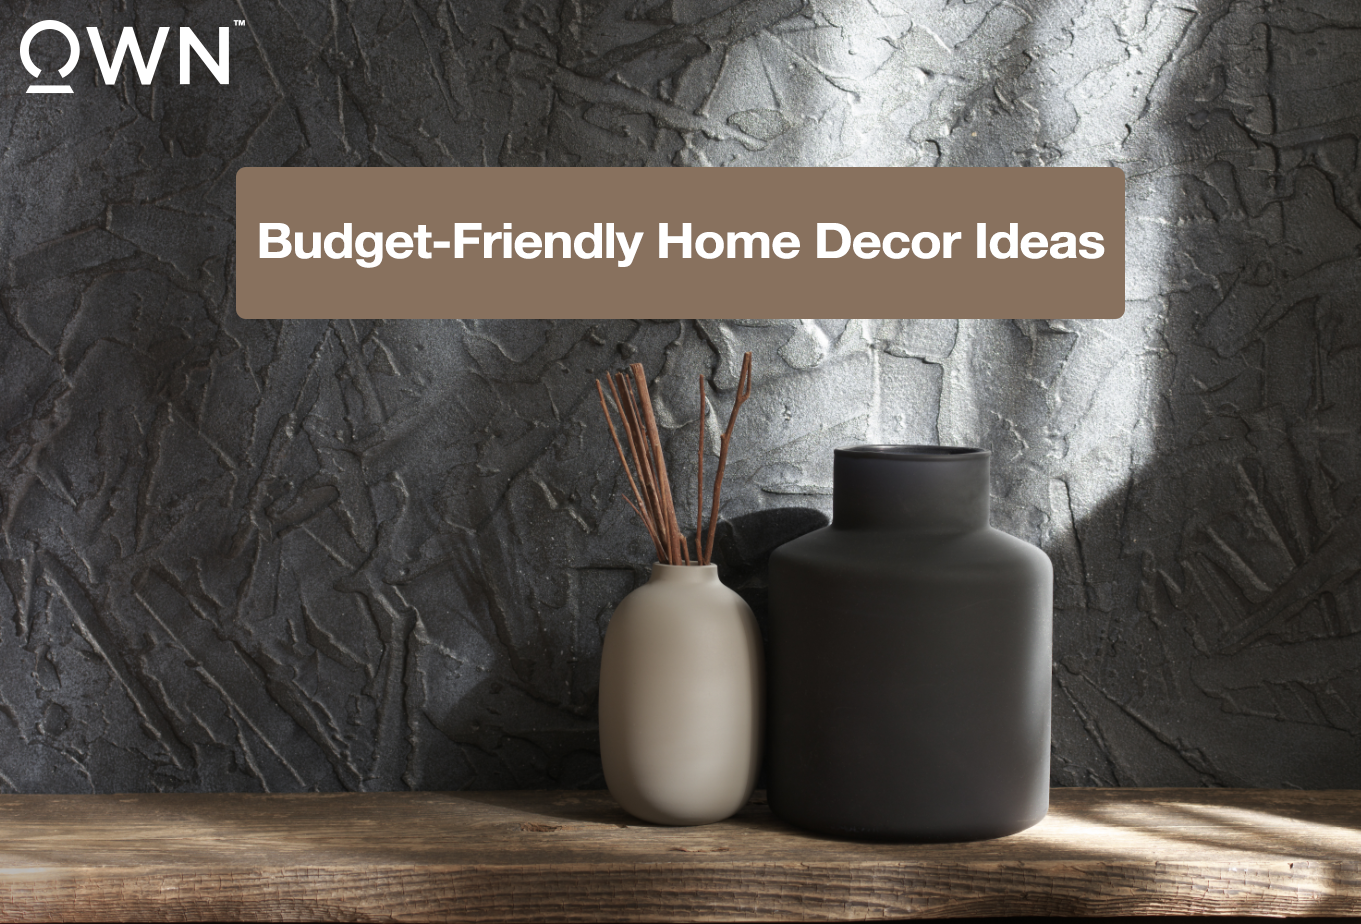 Budget-Friendly Home Decor Ideas